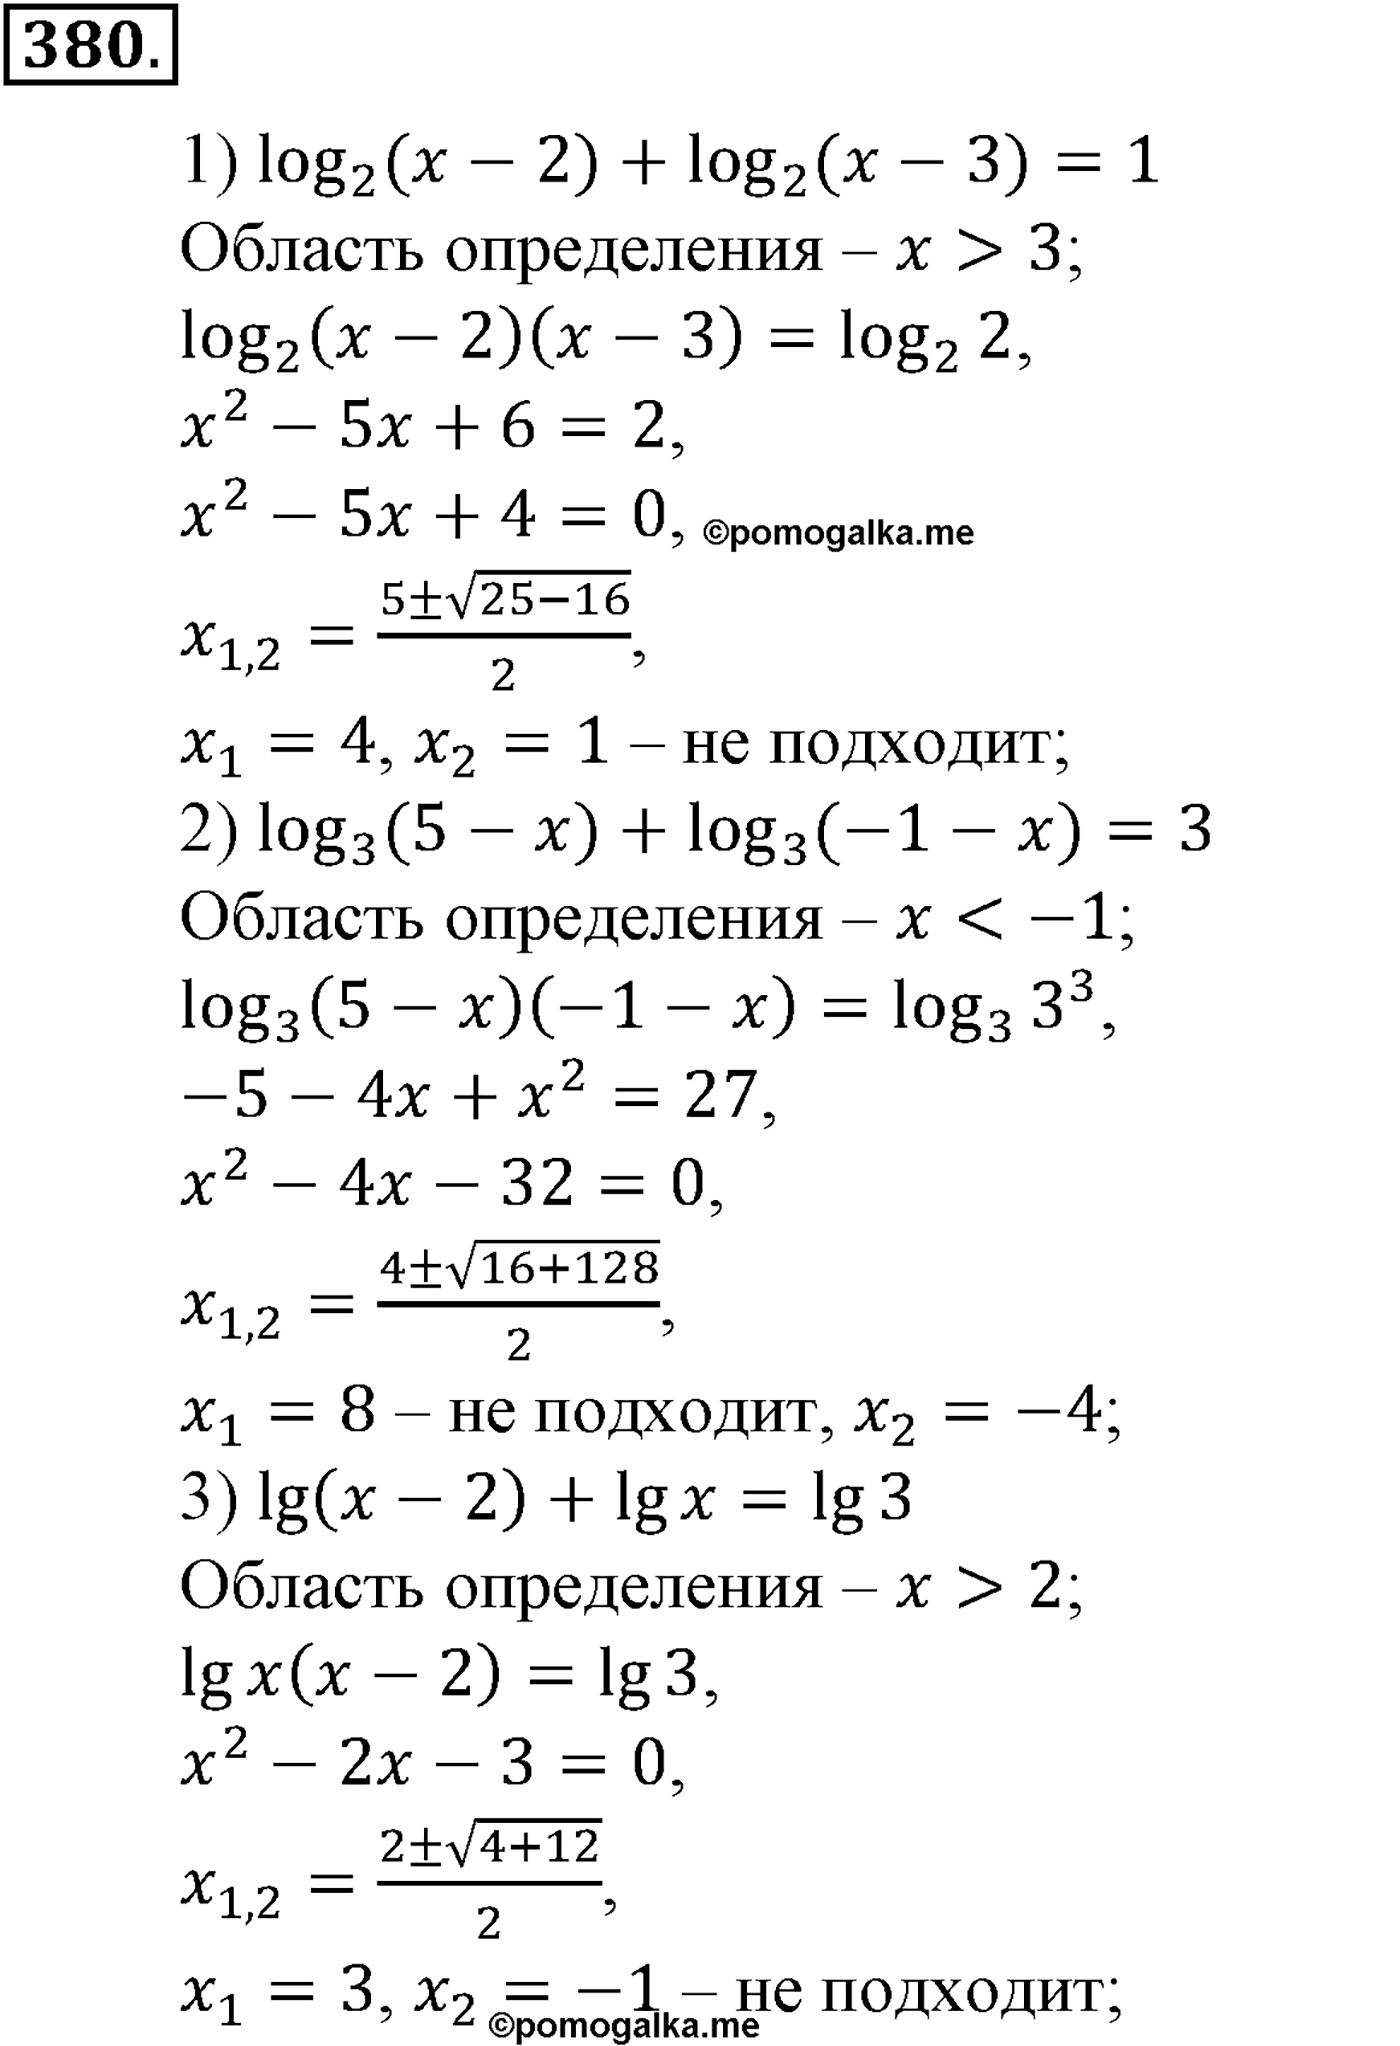 разбор задачи №380 по алгебре за 10-11 класс из учебника Алимова, Колягина